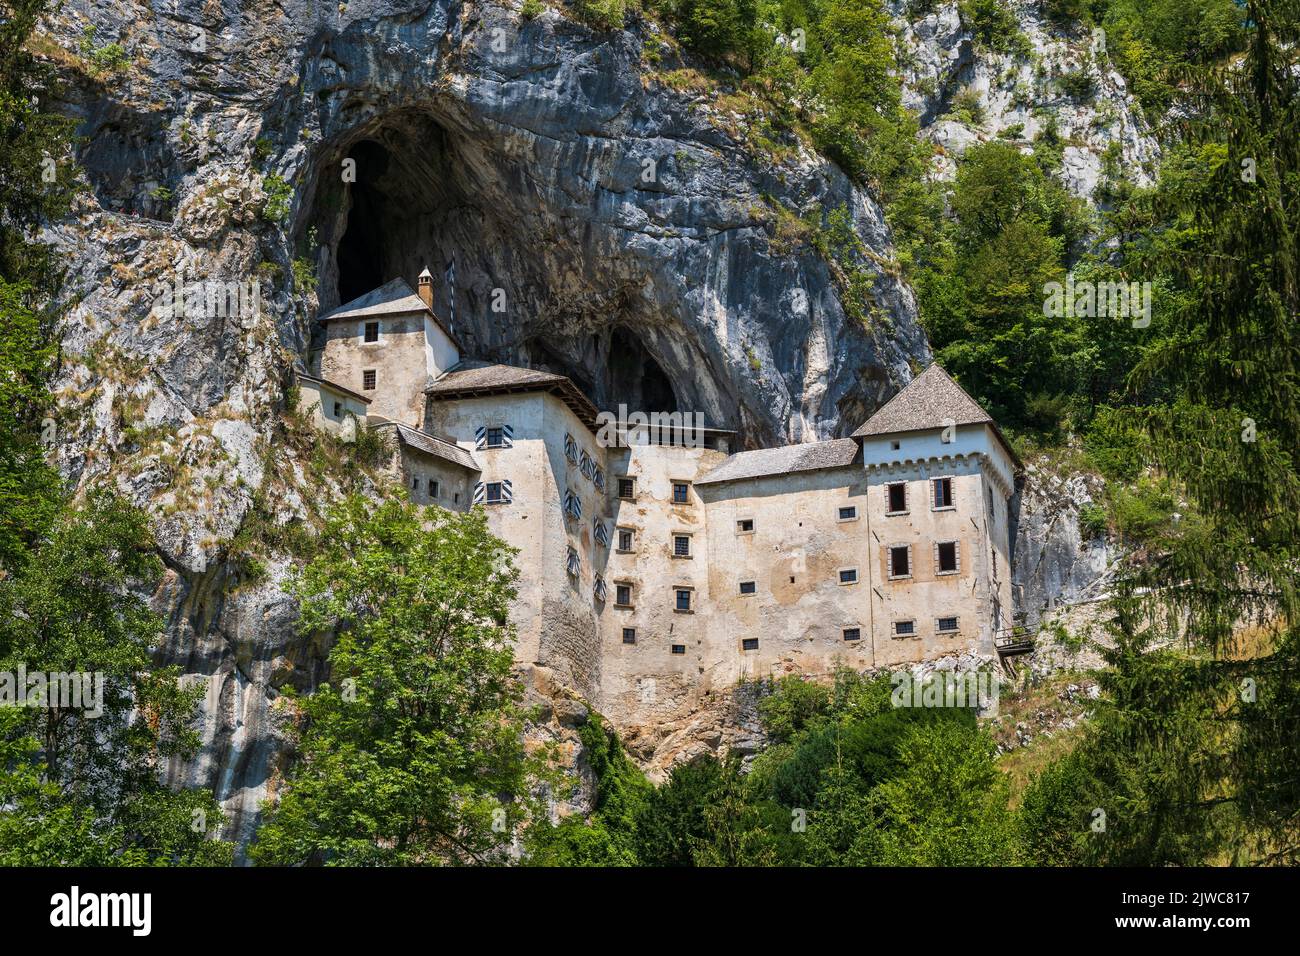 The Predjama Castle in Slovenia. Medieval cave castle perched in cliff. Stock Photo